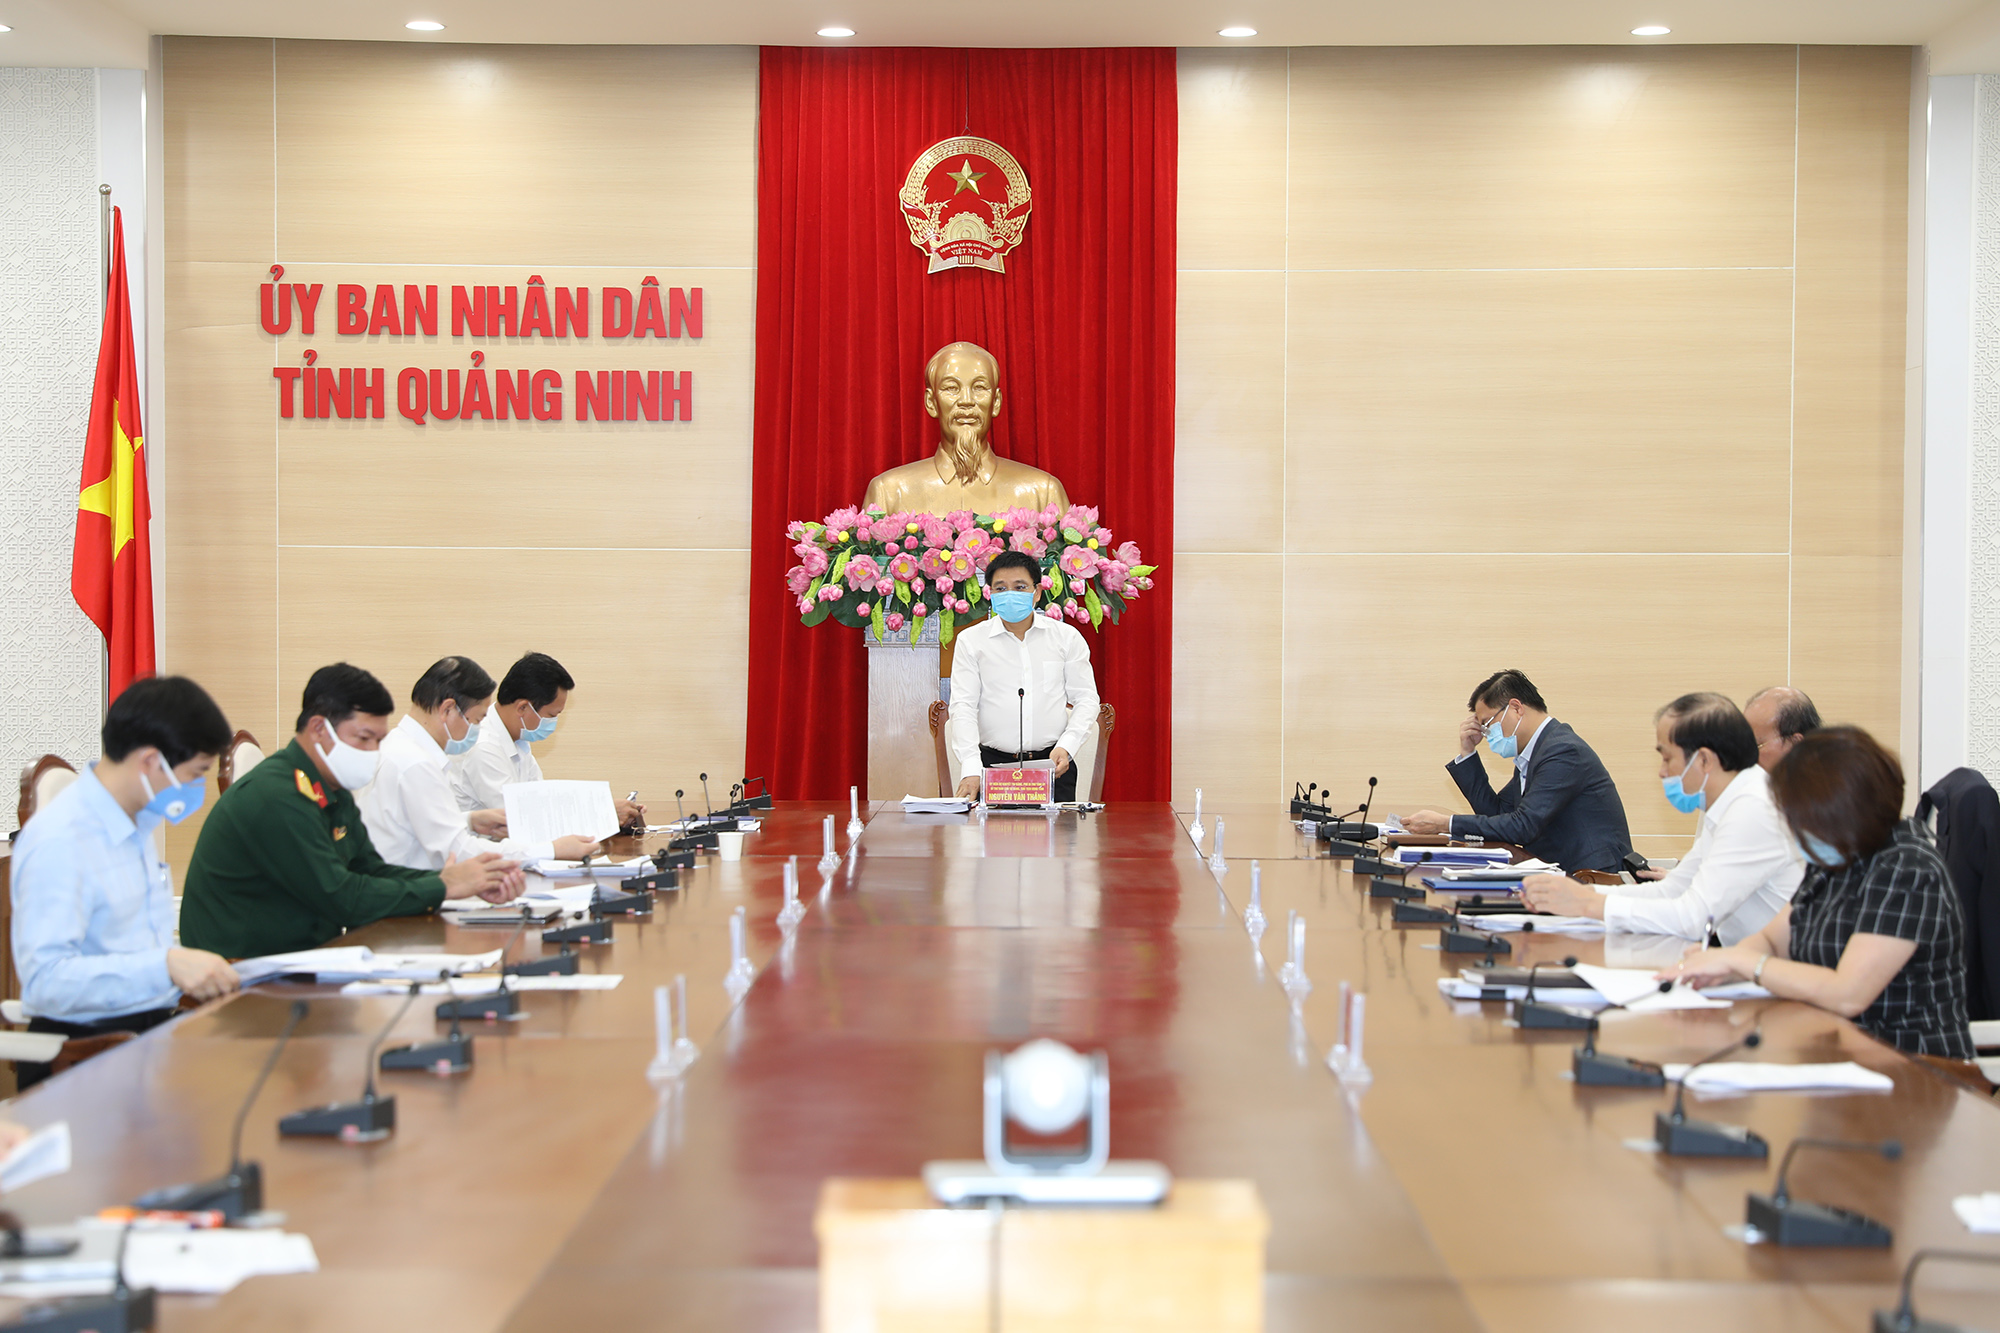 Đồng chí Nguyễn Văn Thắng, Phó Bí thư Tỉnh ủy, Chủ tịch UBND tỉnh chủ trì